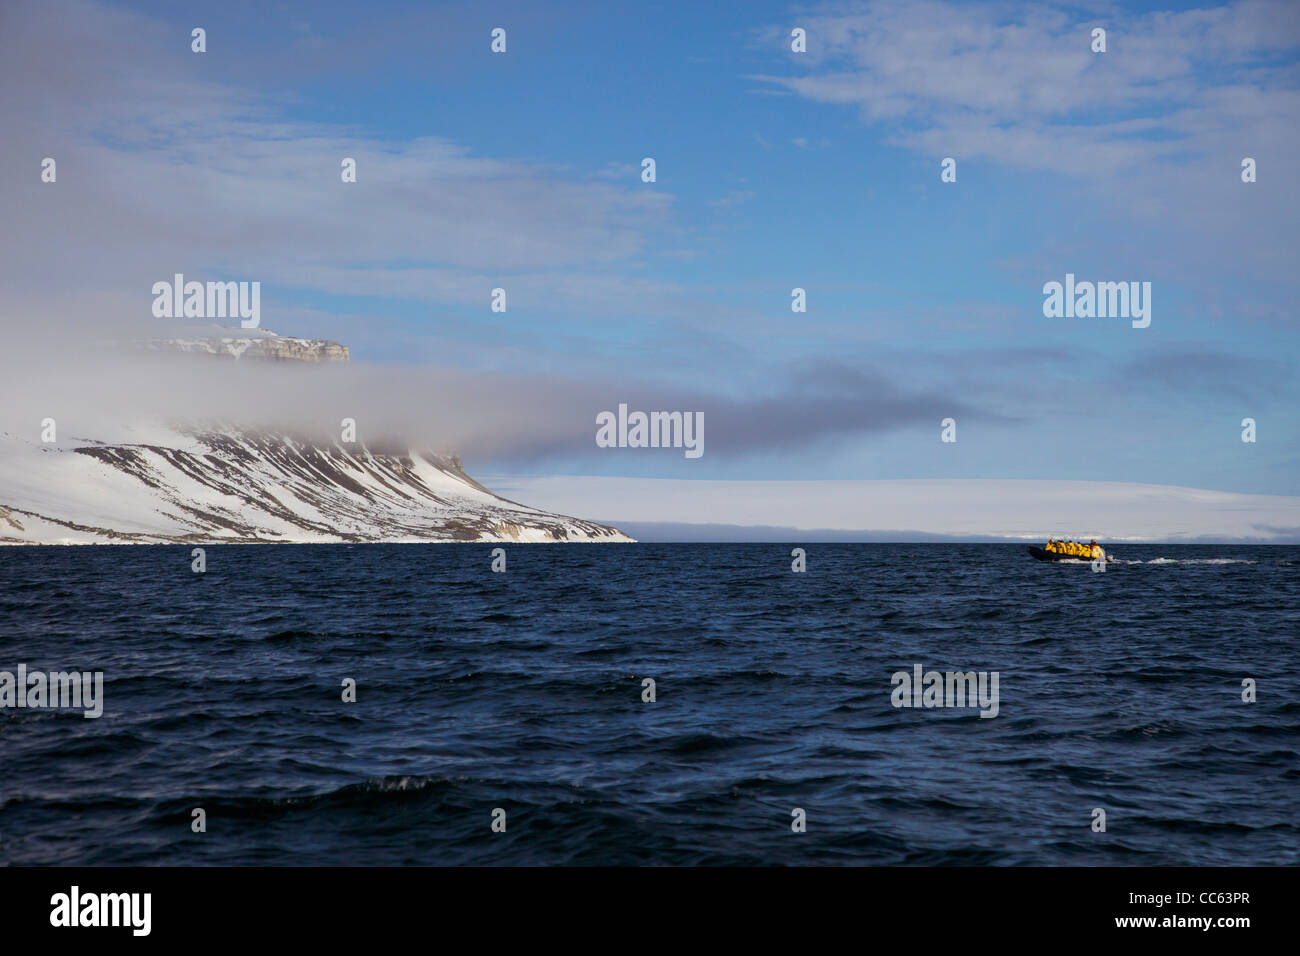 Les touristes en croisière en zodiac aventure arctique inflatables, Alkefjellet, falaises nord du Spitzberg, Svalbard, Norvège, Europe, Banque D'Images